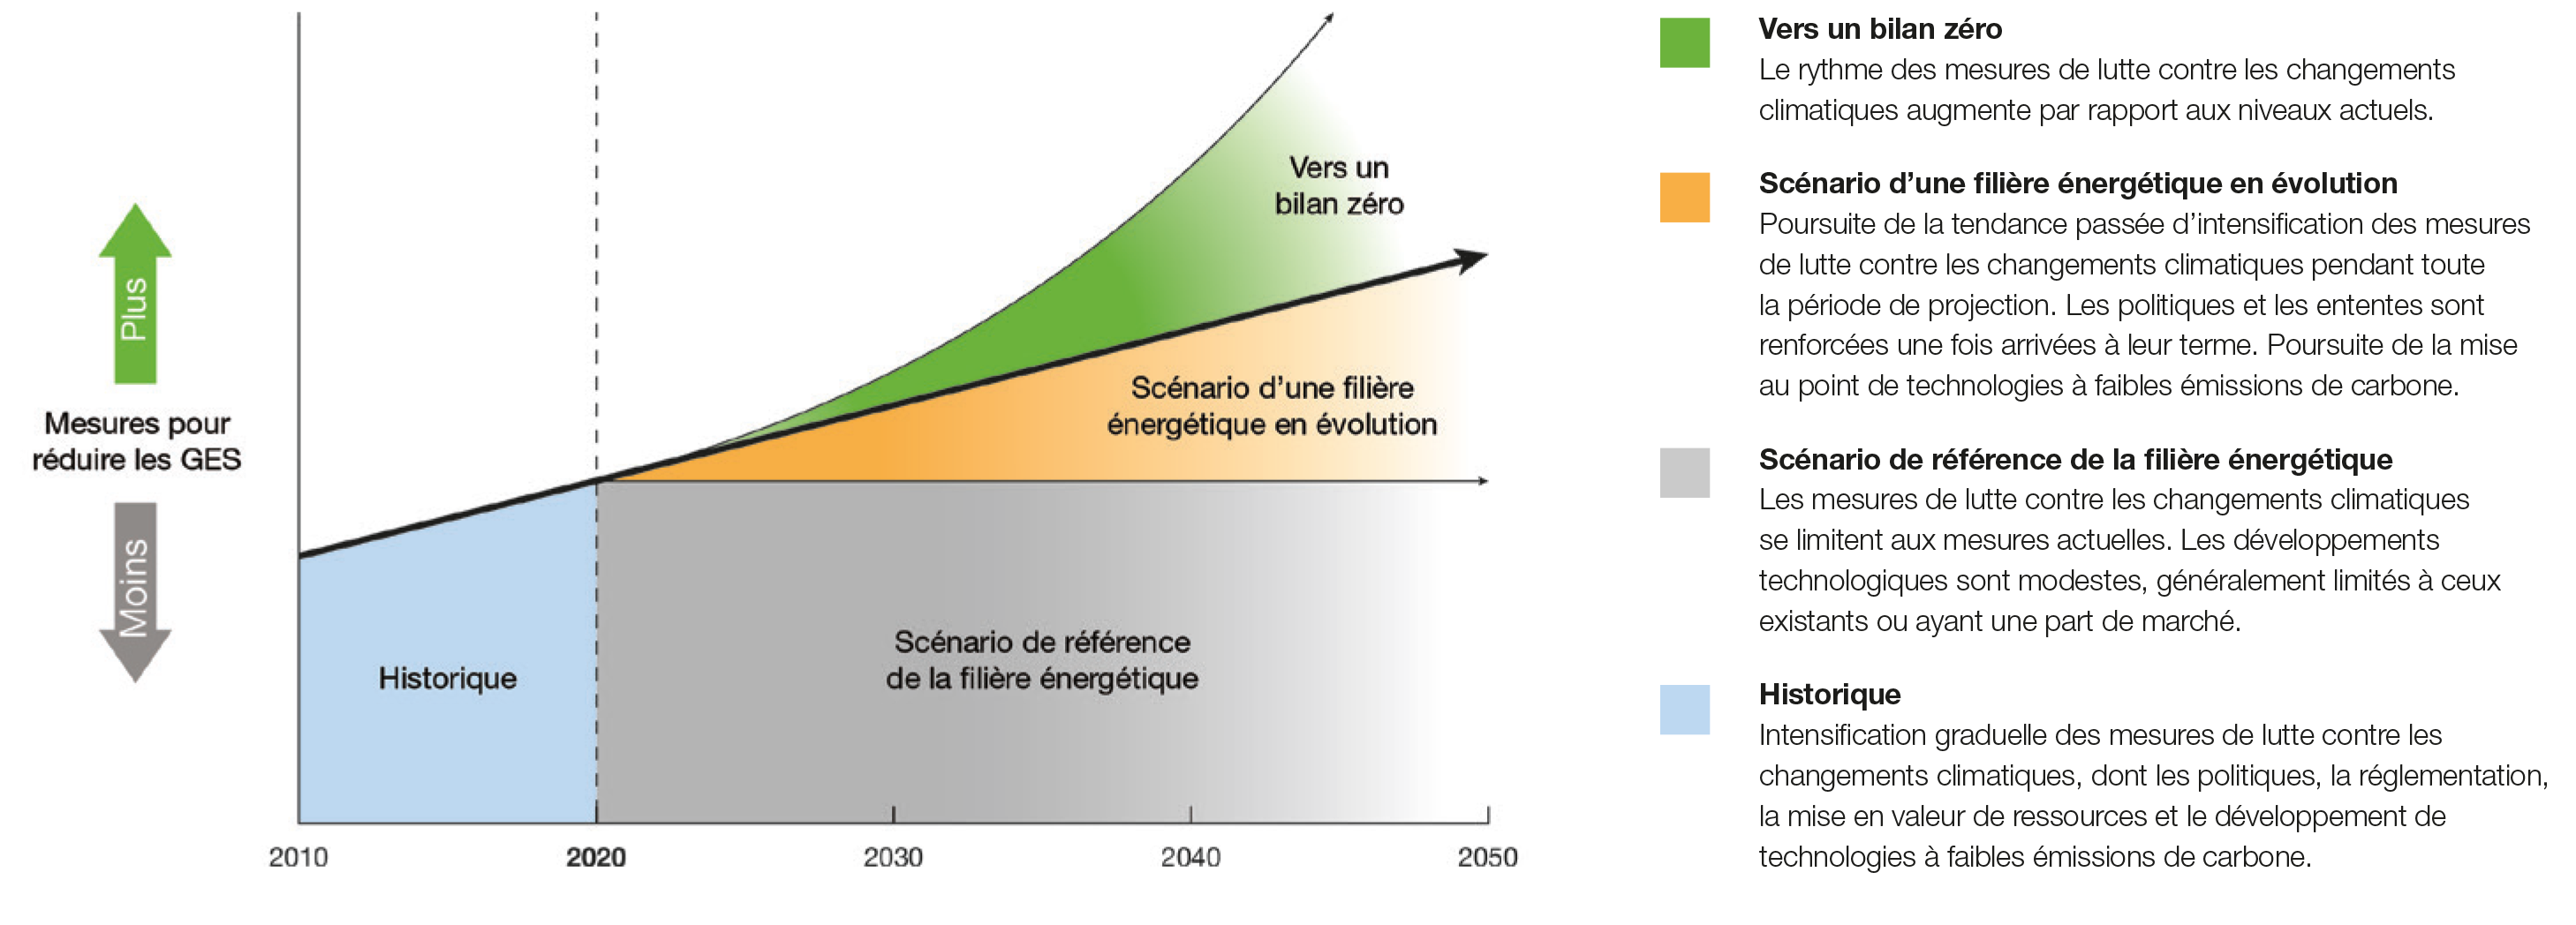 Figure A1 ‐ Schéma conceptuel des scénarios de l’Avenir énergétique 2020 et d’un avenir à zéro émission nette